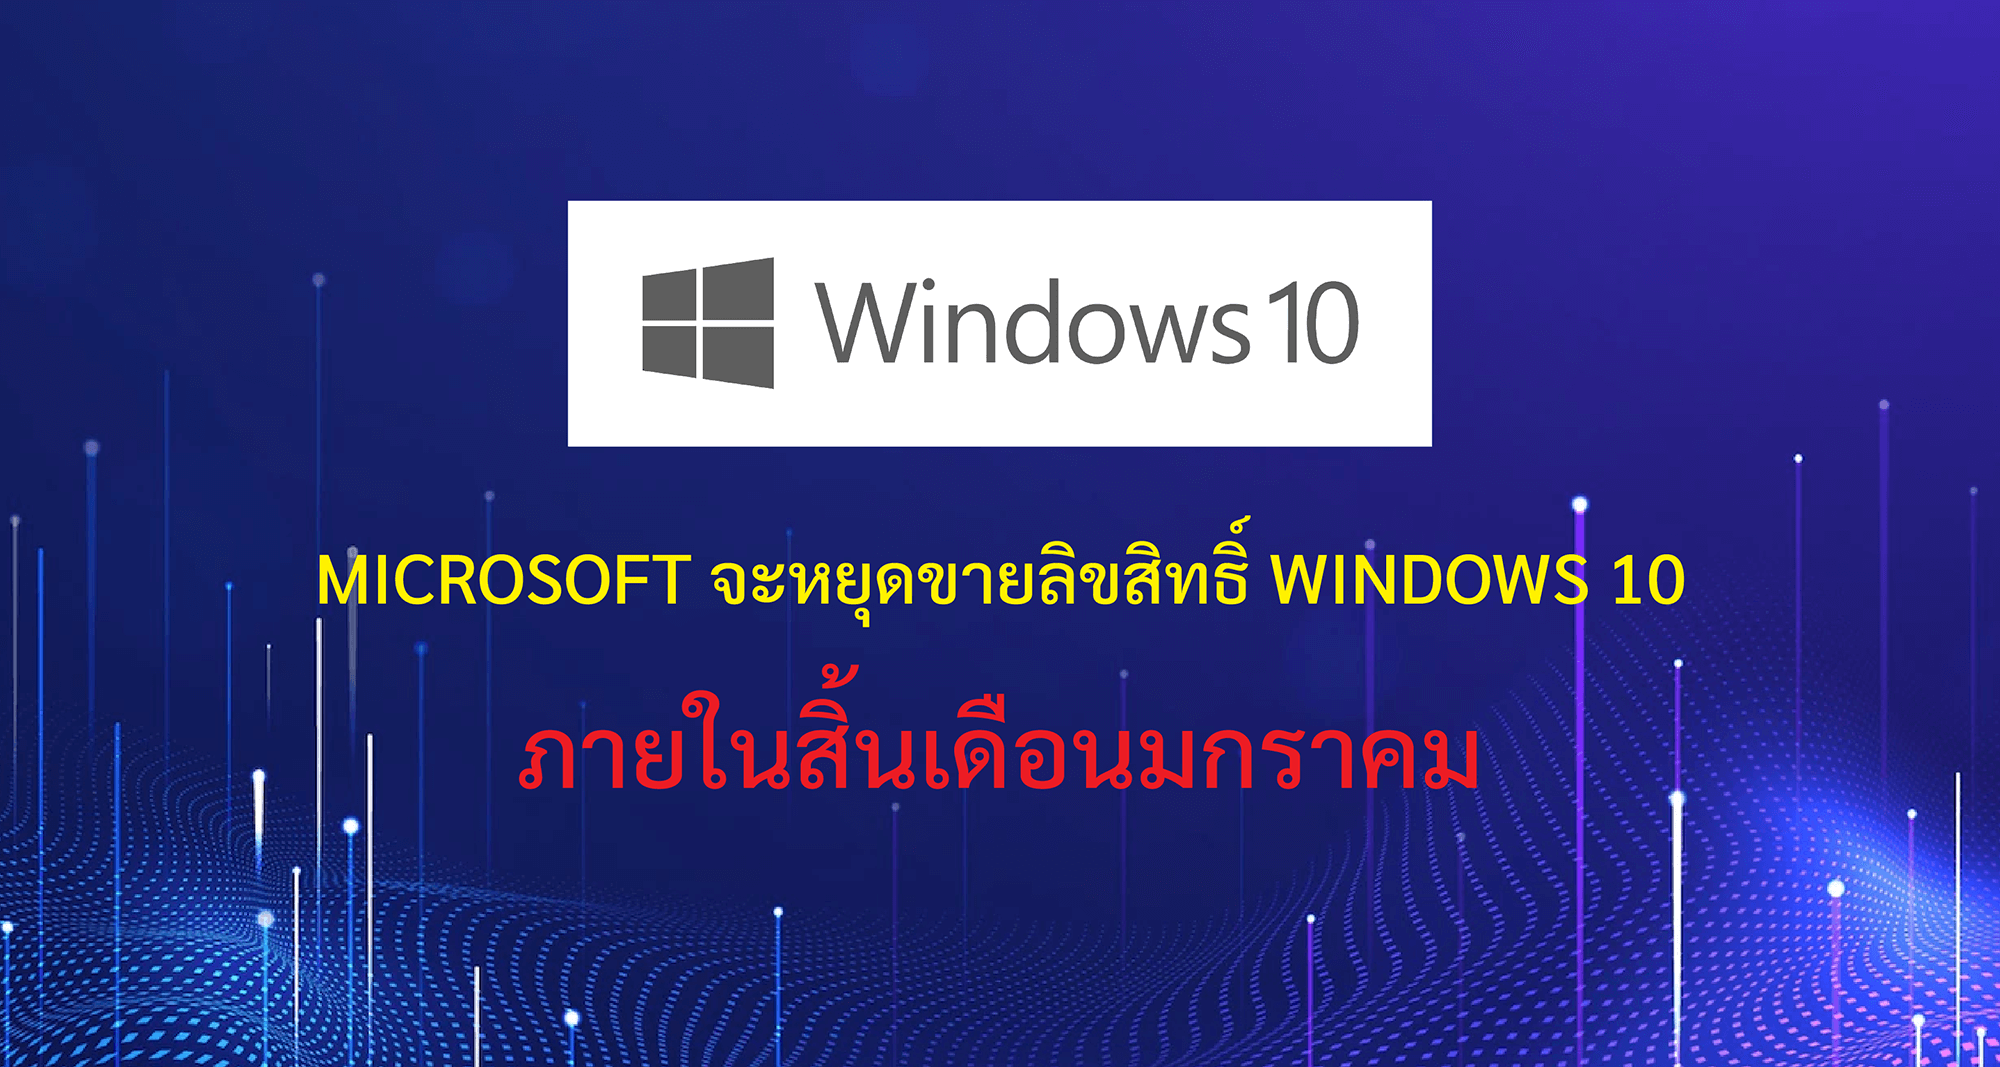 Microsoft จะหยุดขายลิขสิทธิ์ Windows 10 ภายในสิ้นเดือนมกราคม